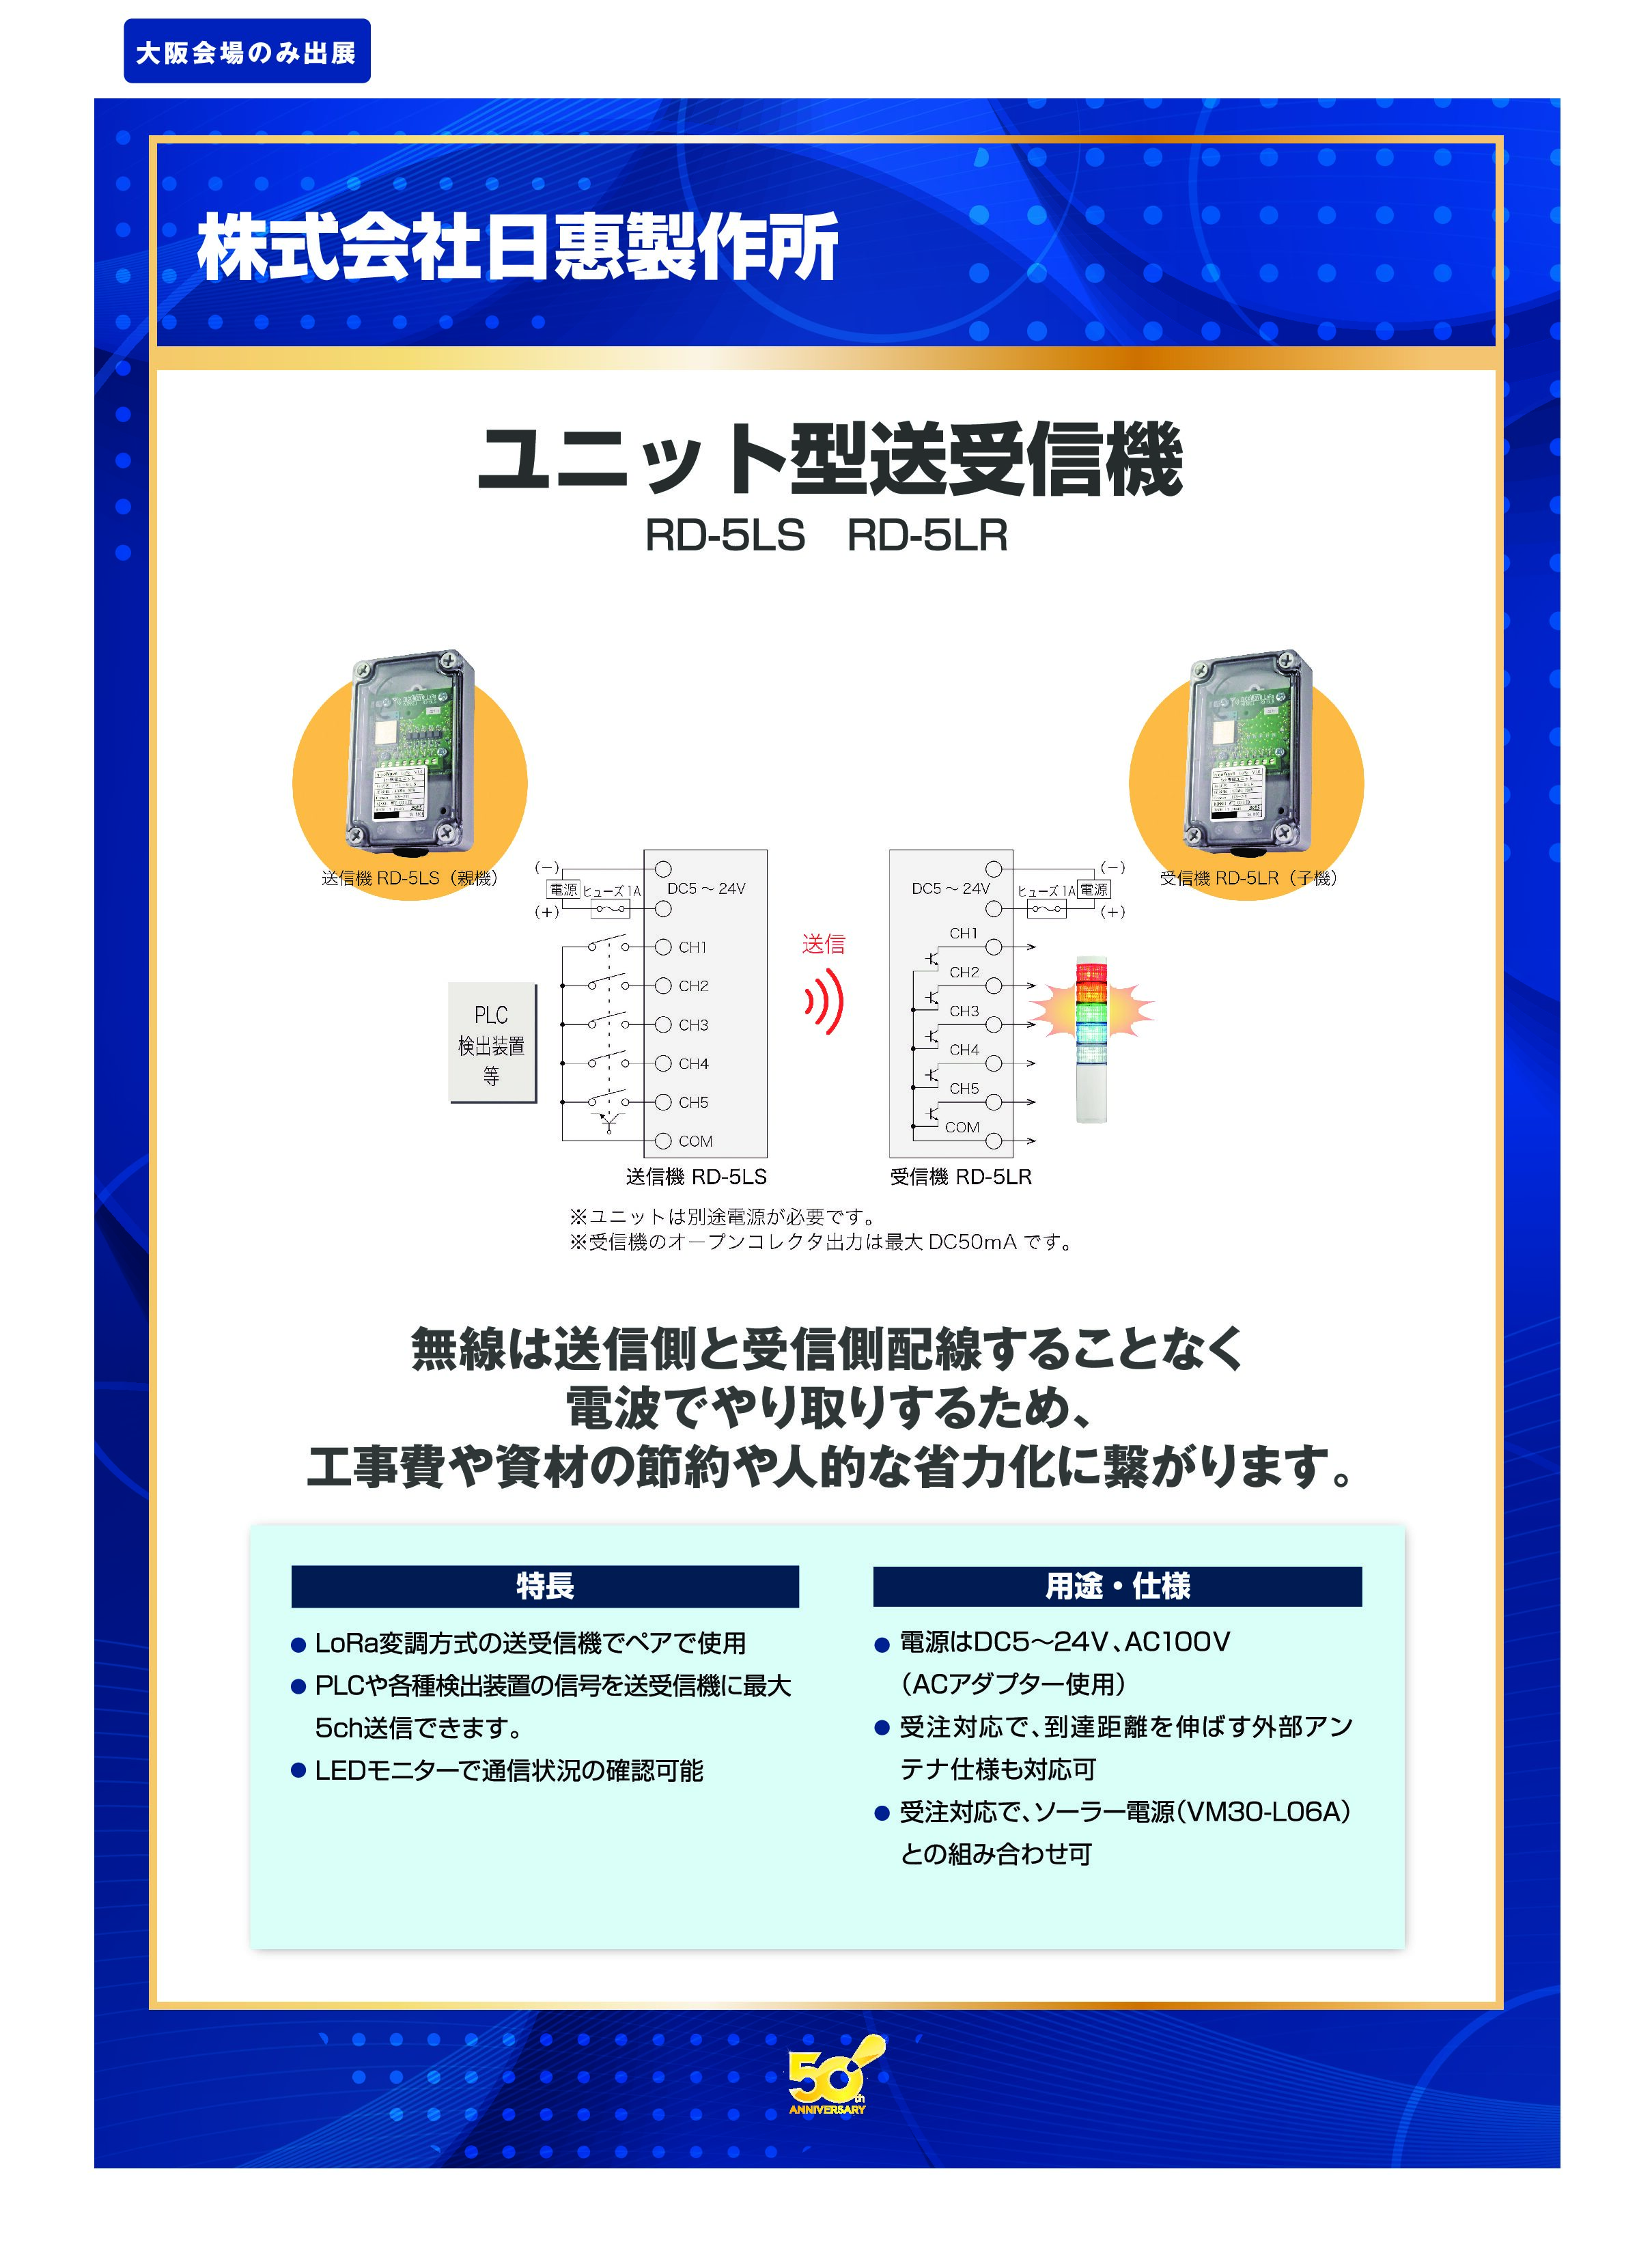 「ユニット型送受信機」株式会社日惠製作所の画像